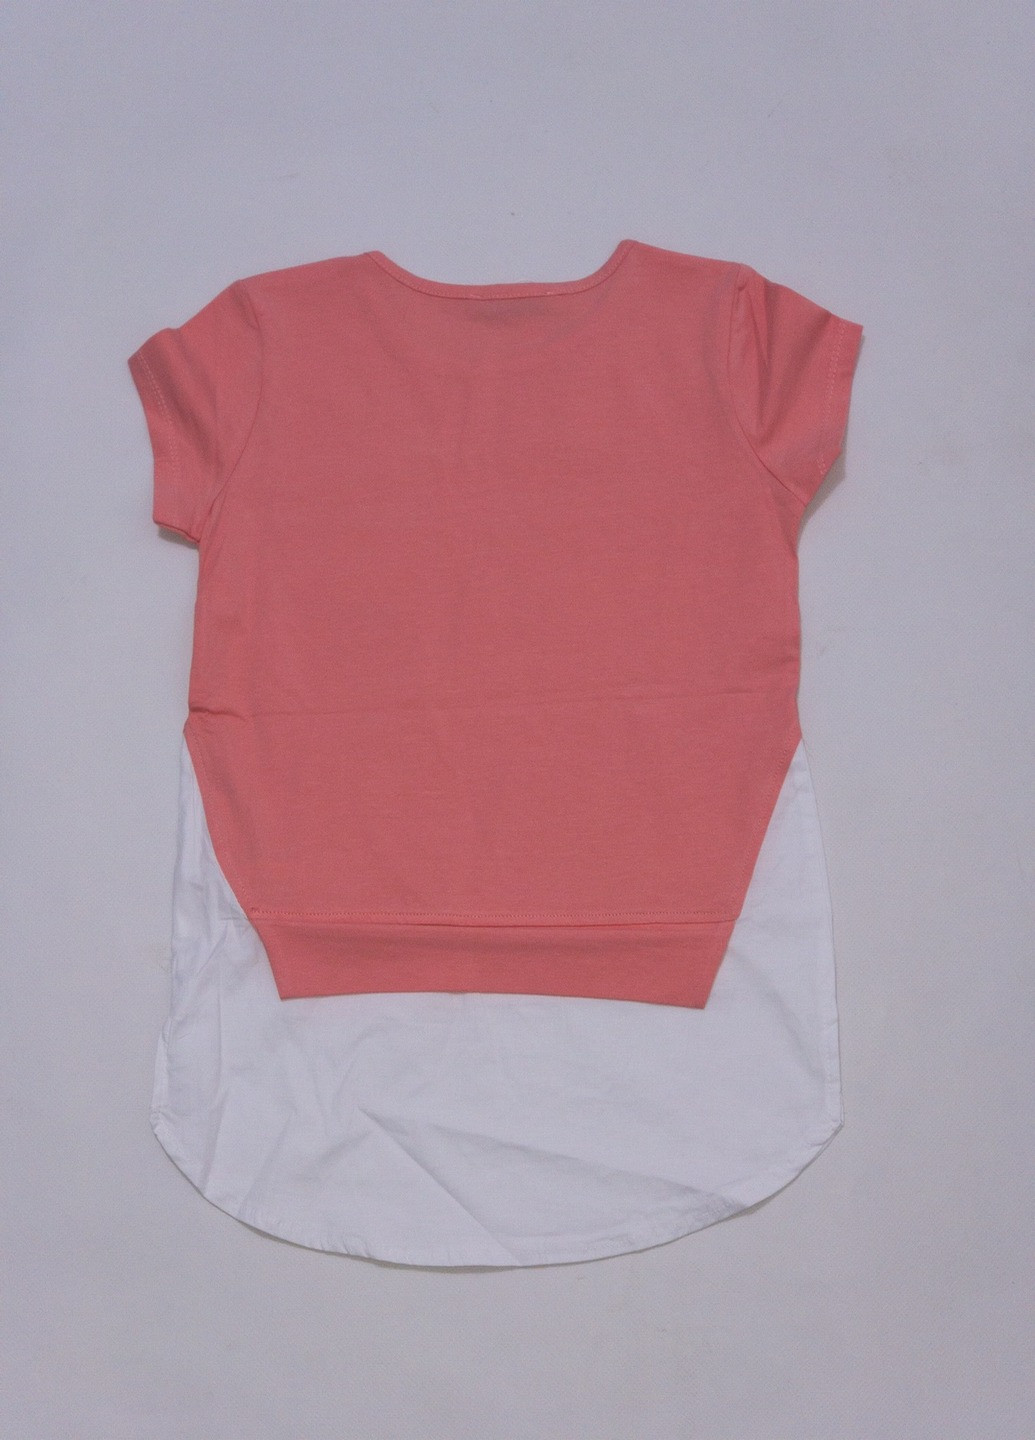 Персиковая летняя футболка для девочки Turkey